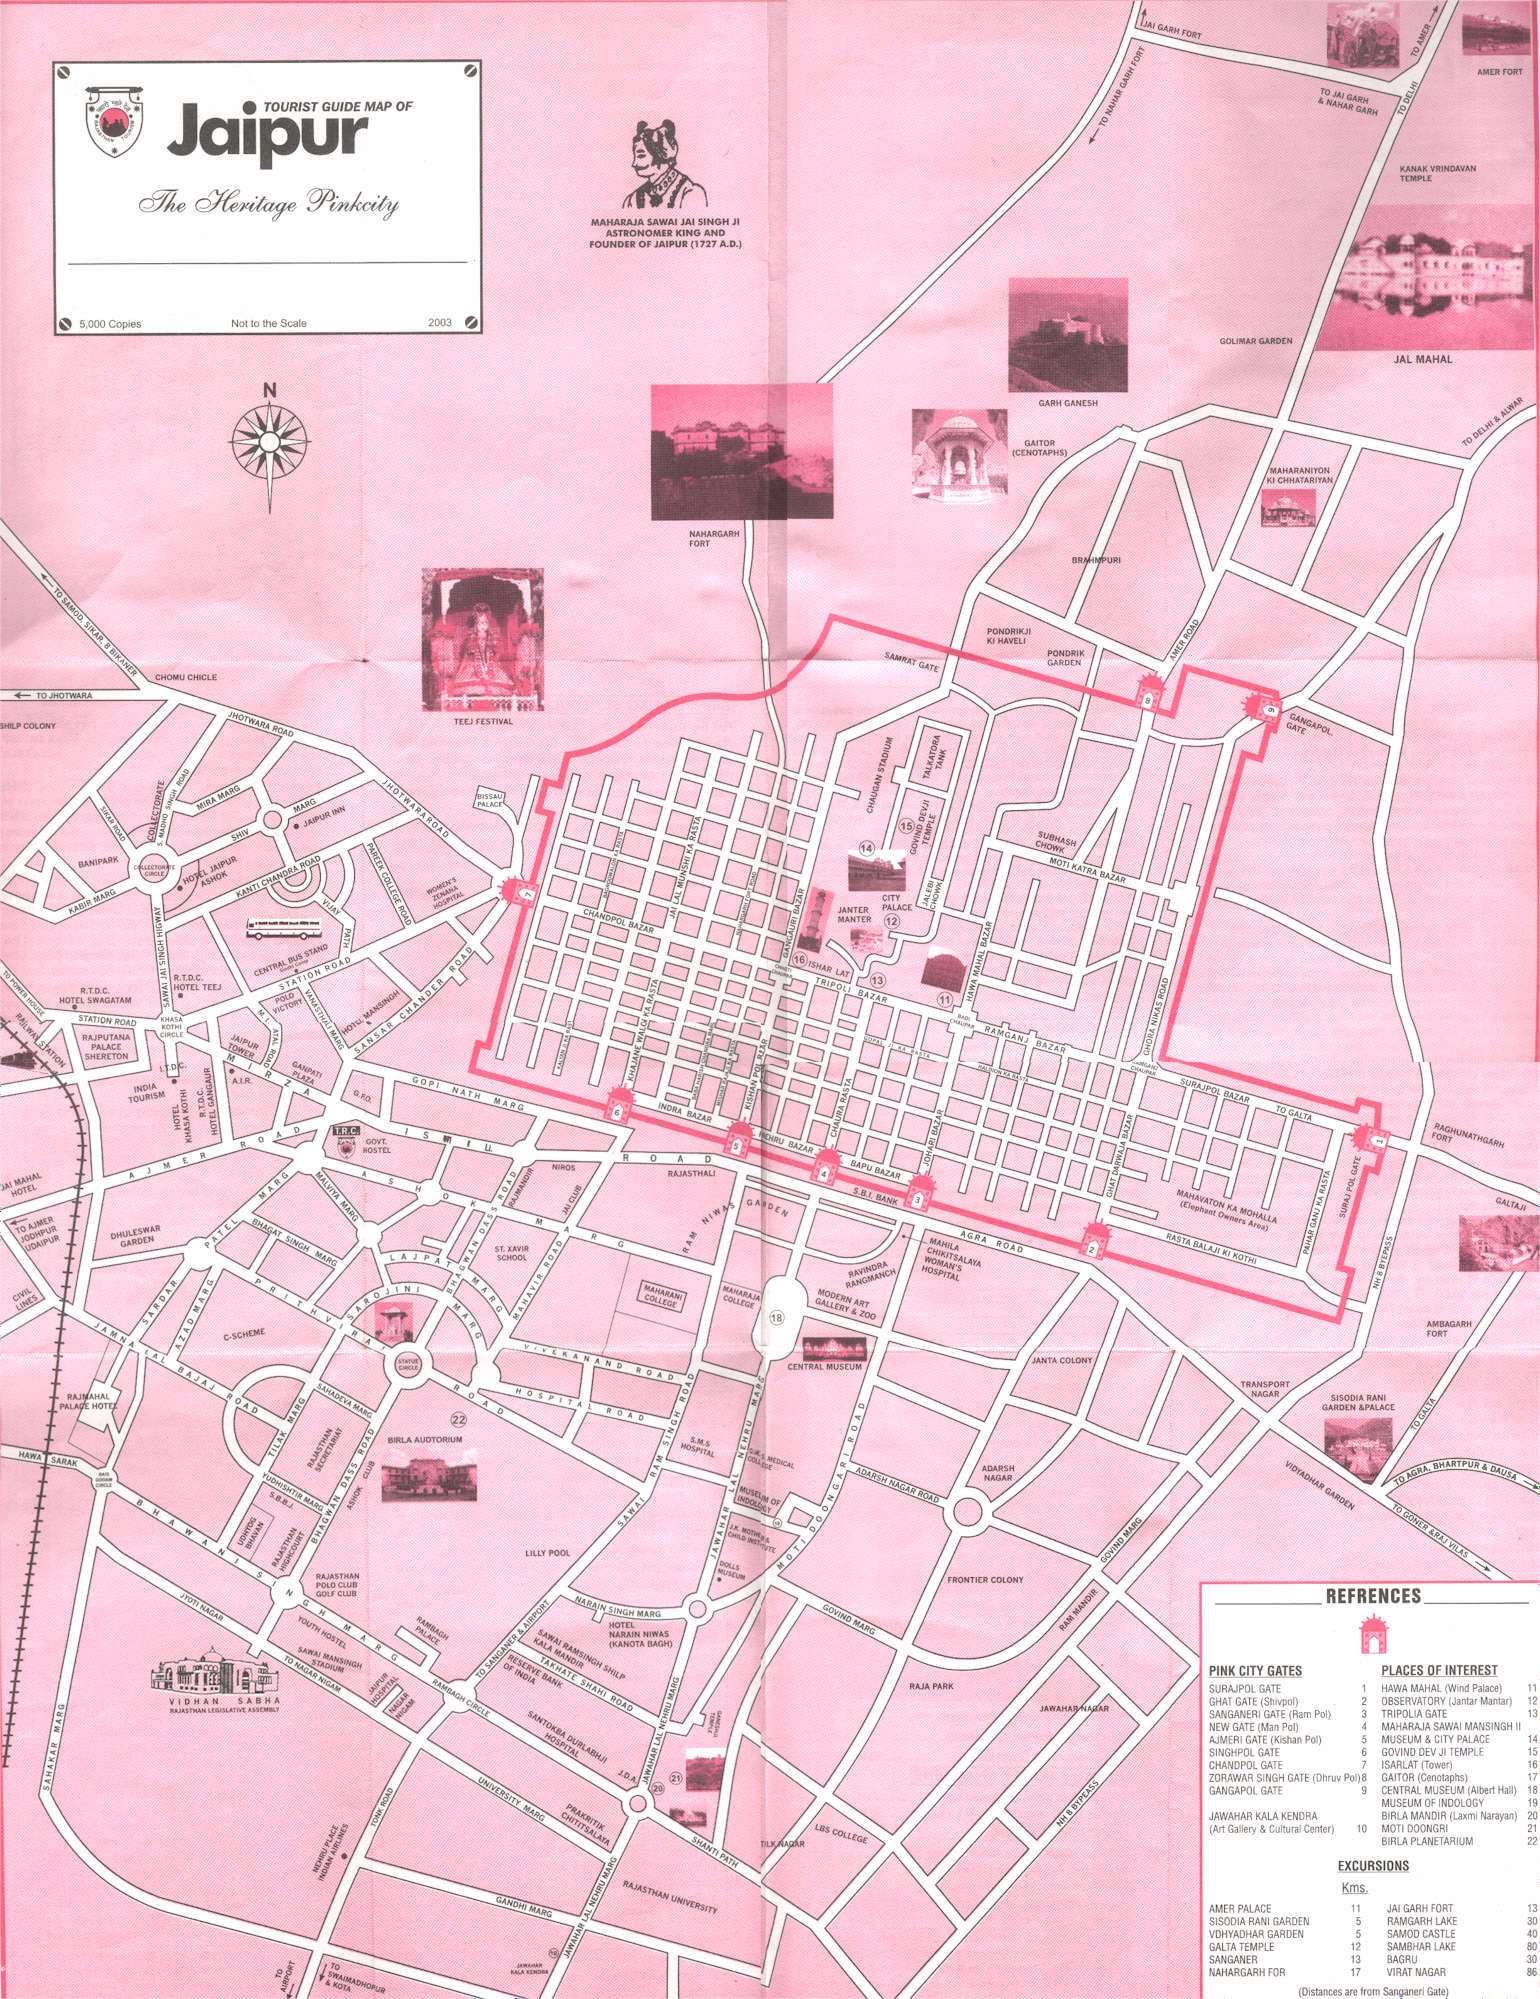 jaipur city map download Jaipur Maps Jaipur Travel Guide Jaipur Tourism Portal Jaipur jaipur city map download